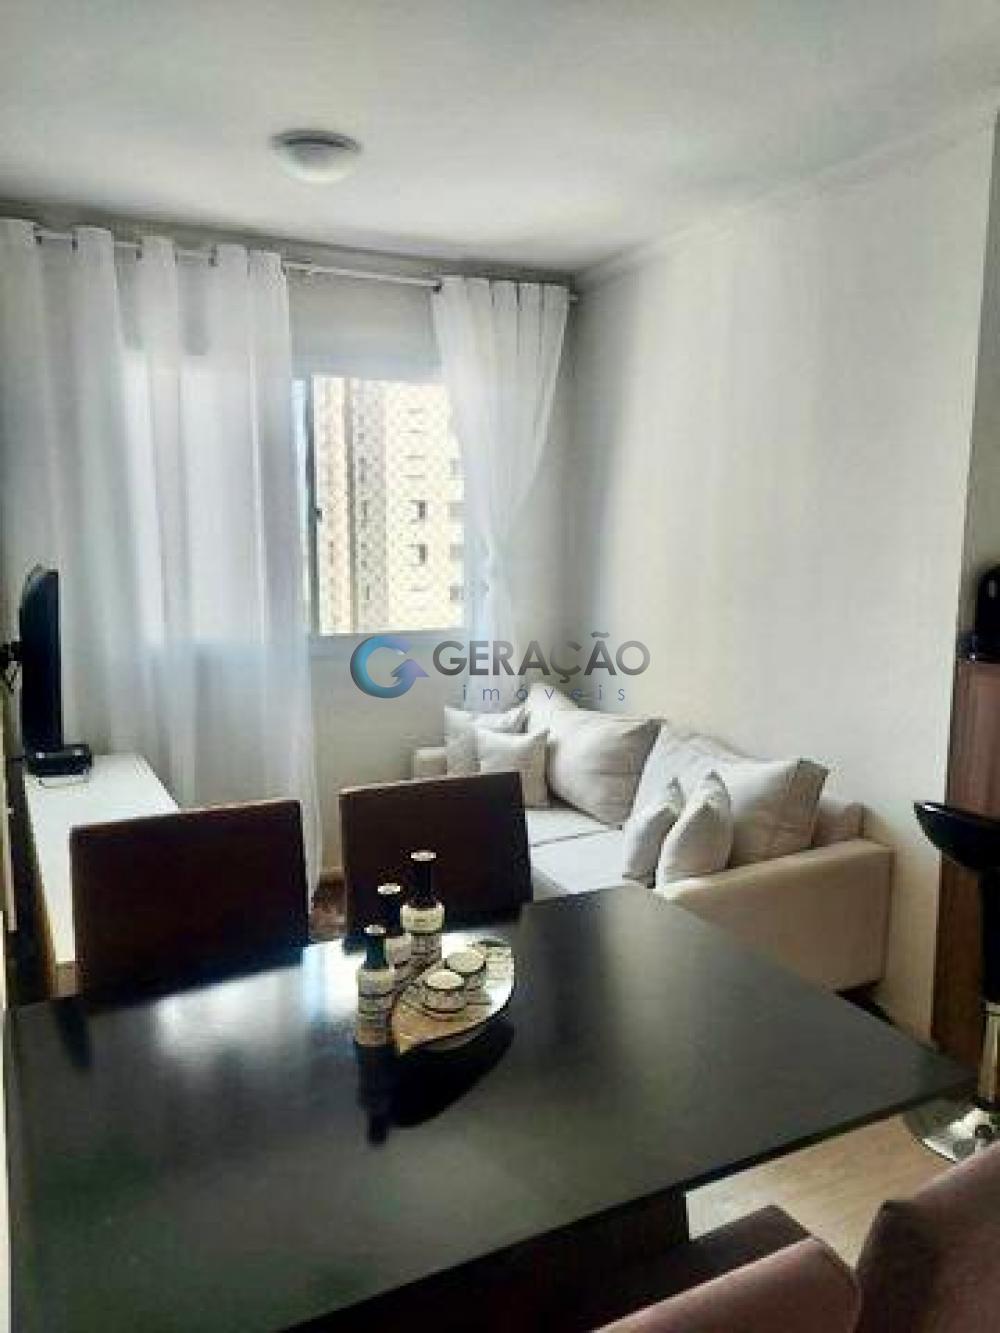 Comprar Apartamento / Padrão em São José dos Campos R$ 240.000,00 - Foto 4